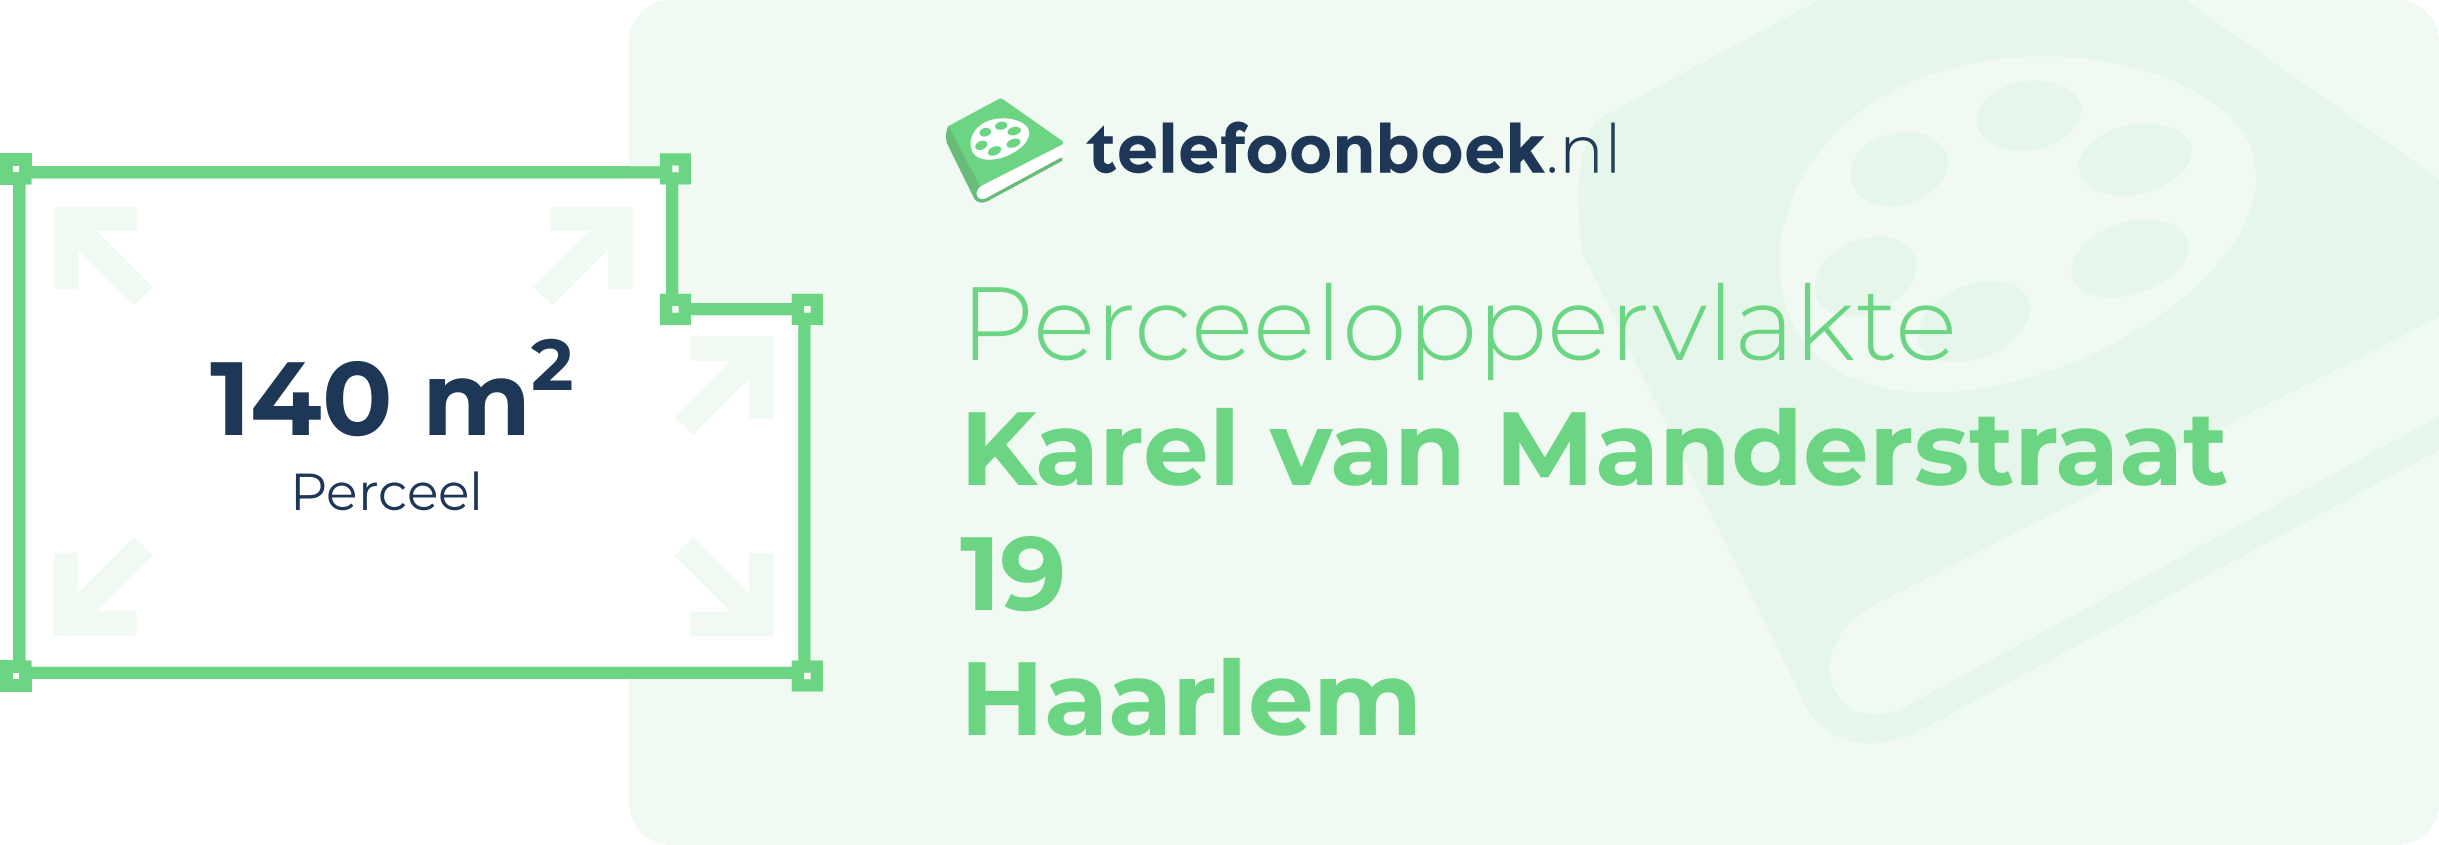 Perceeloppervlakte Karel Van Manderstraat 19 Haarlem